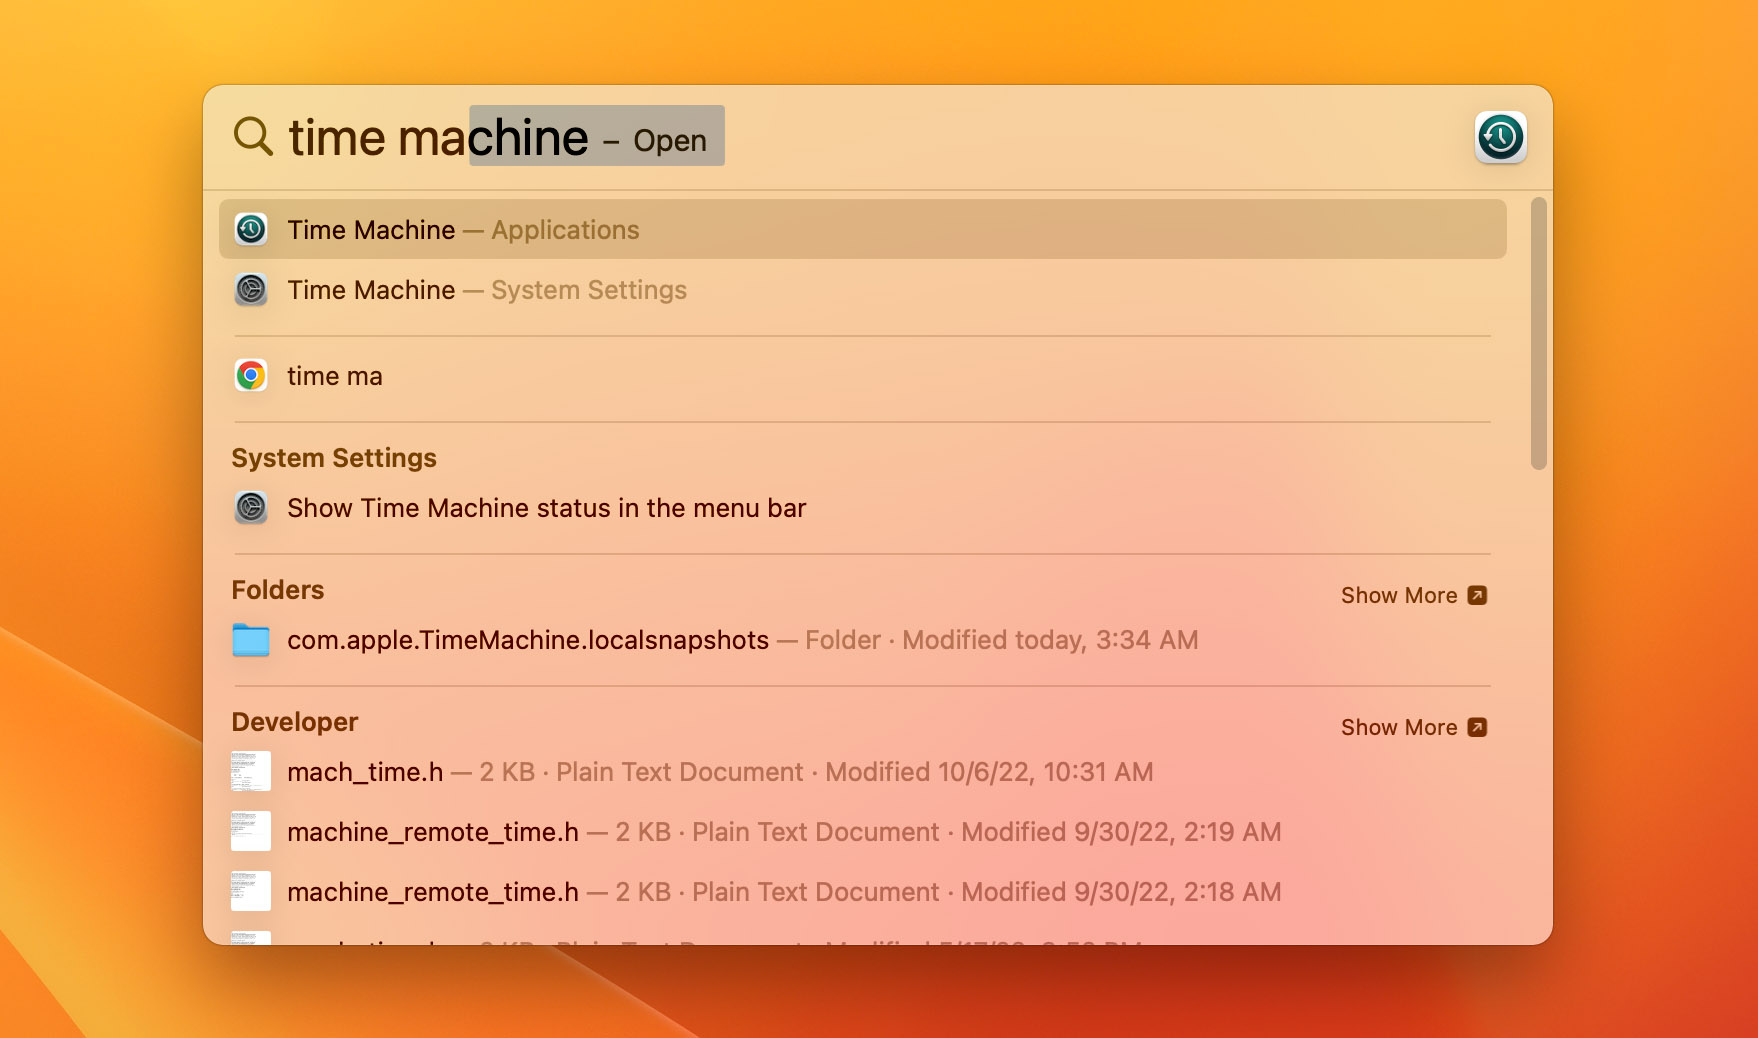 Open Mac time machine.